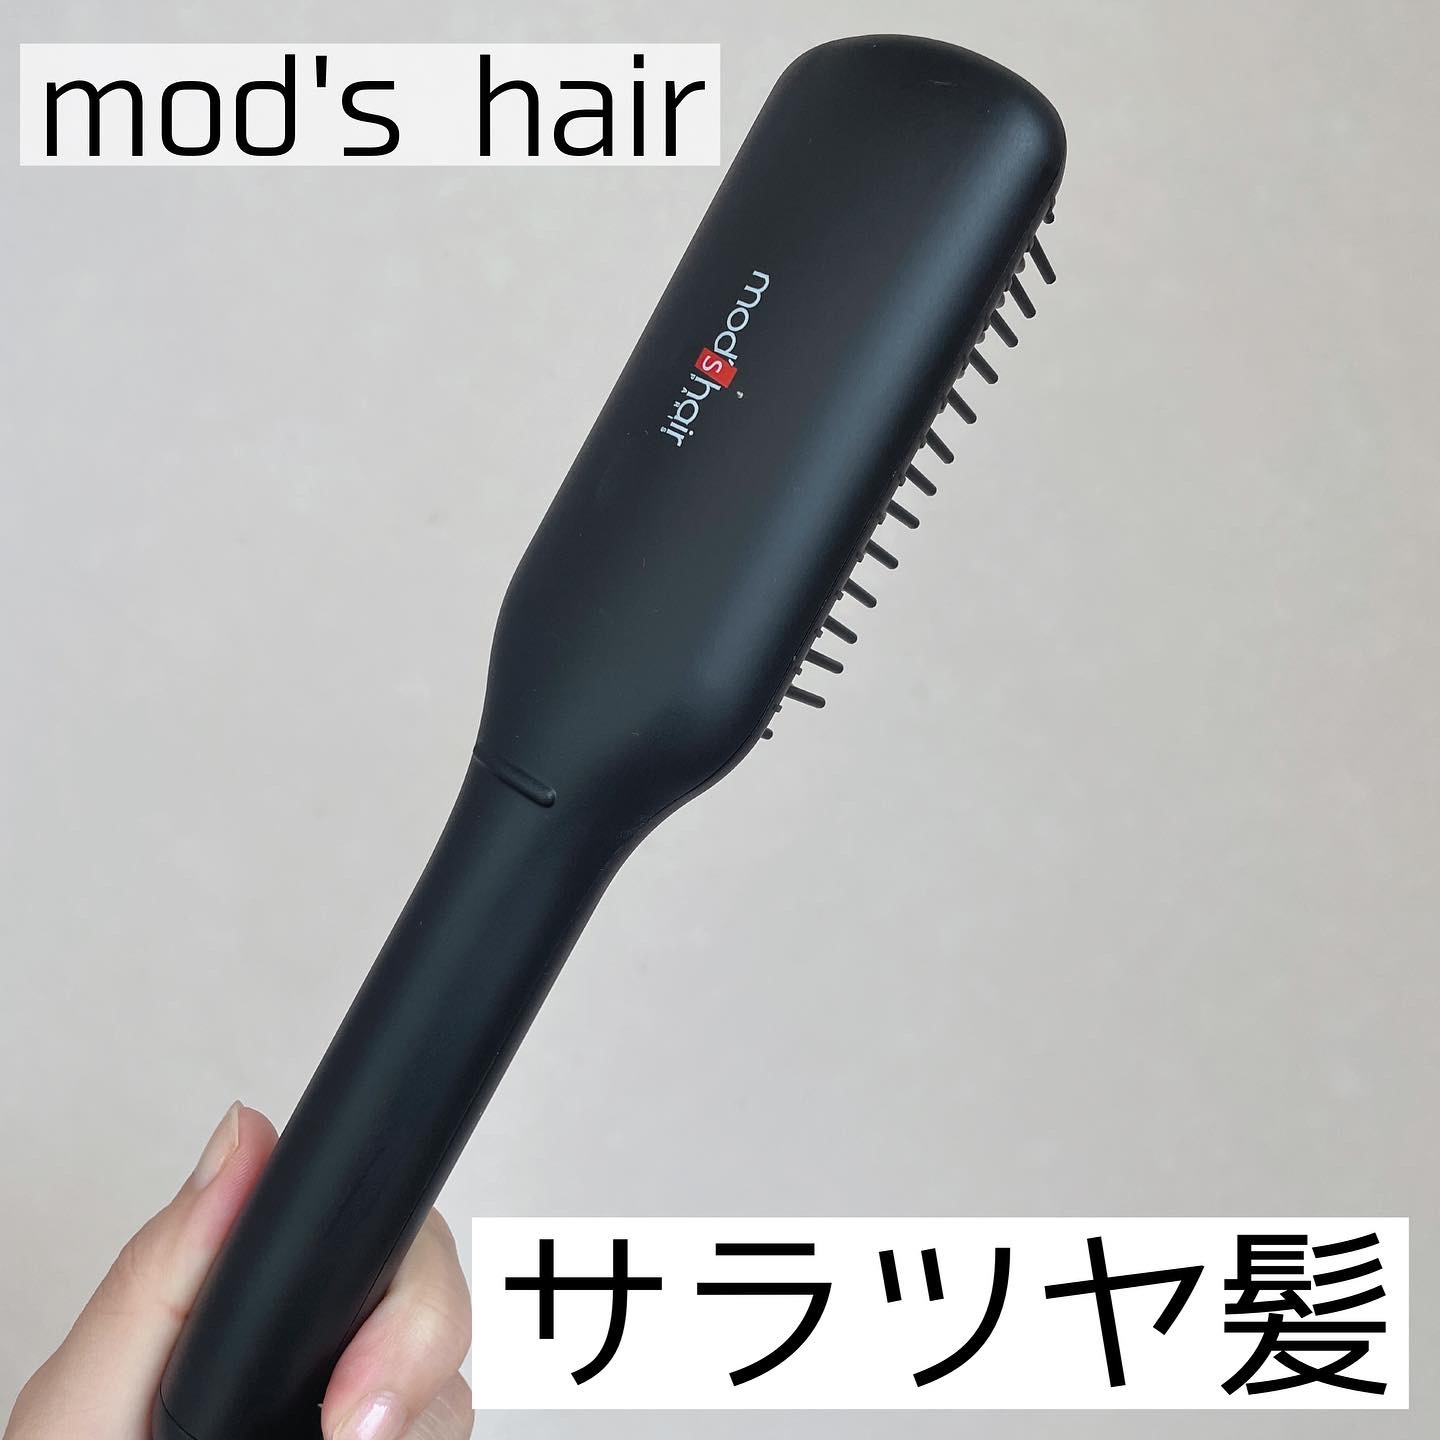 mod’s hair(モッズ・ヘア)スタイリッシュ コンパクトイオンヒートブラシ MHB-3040を使ったなゆさんのクチコミ画像1